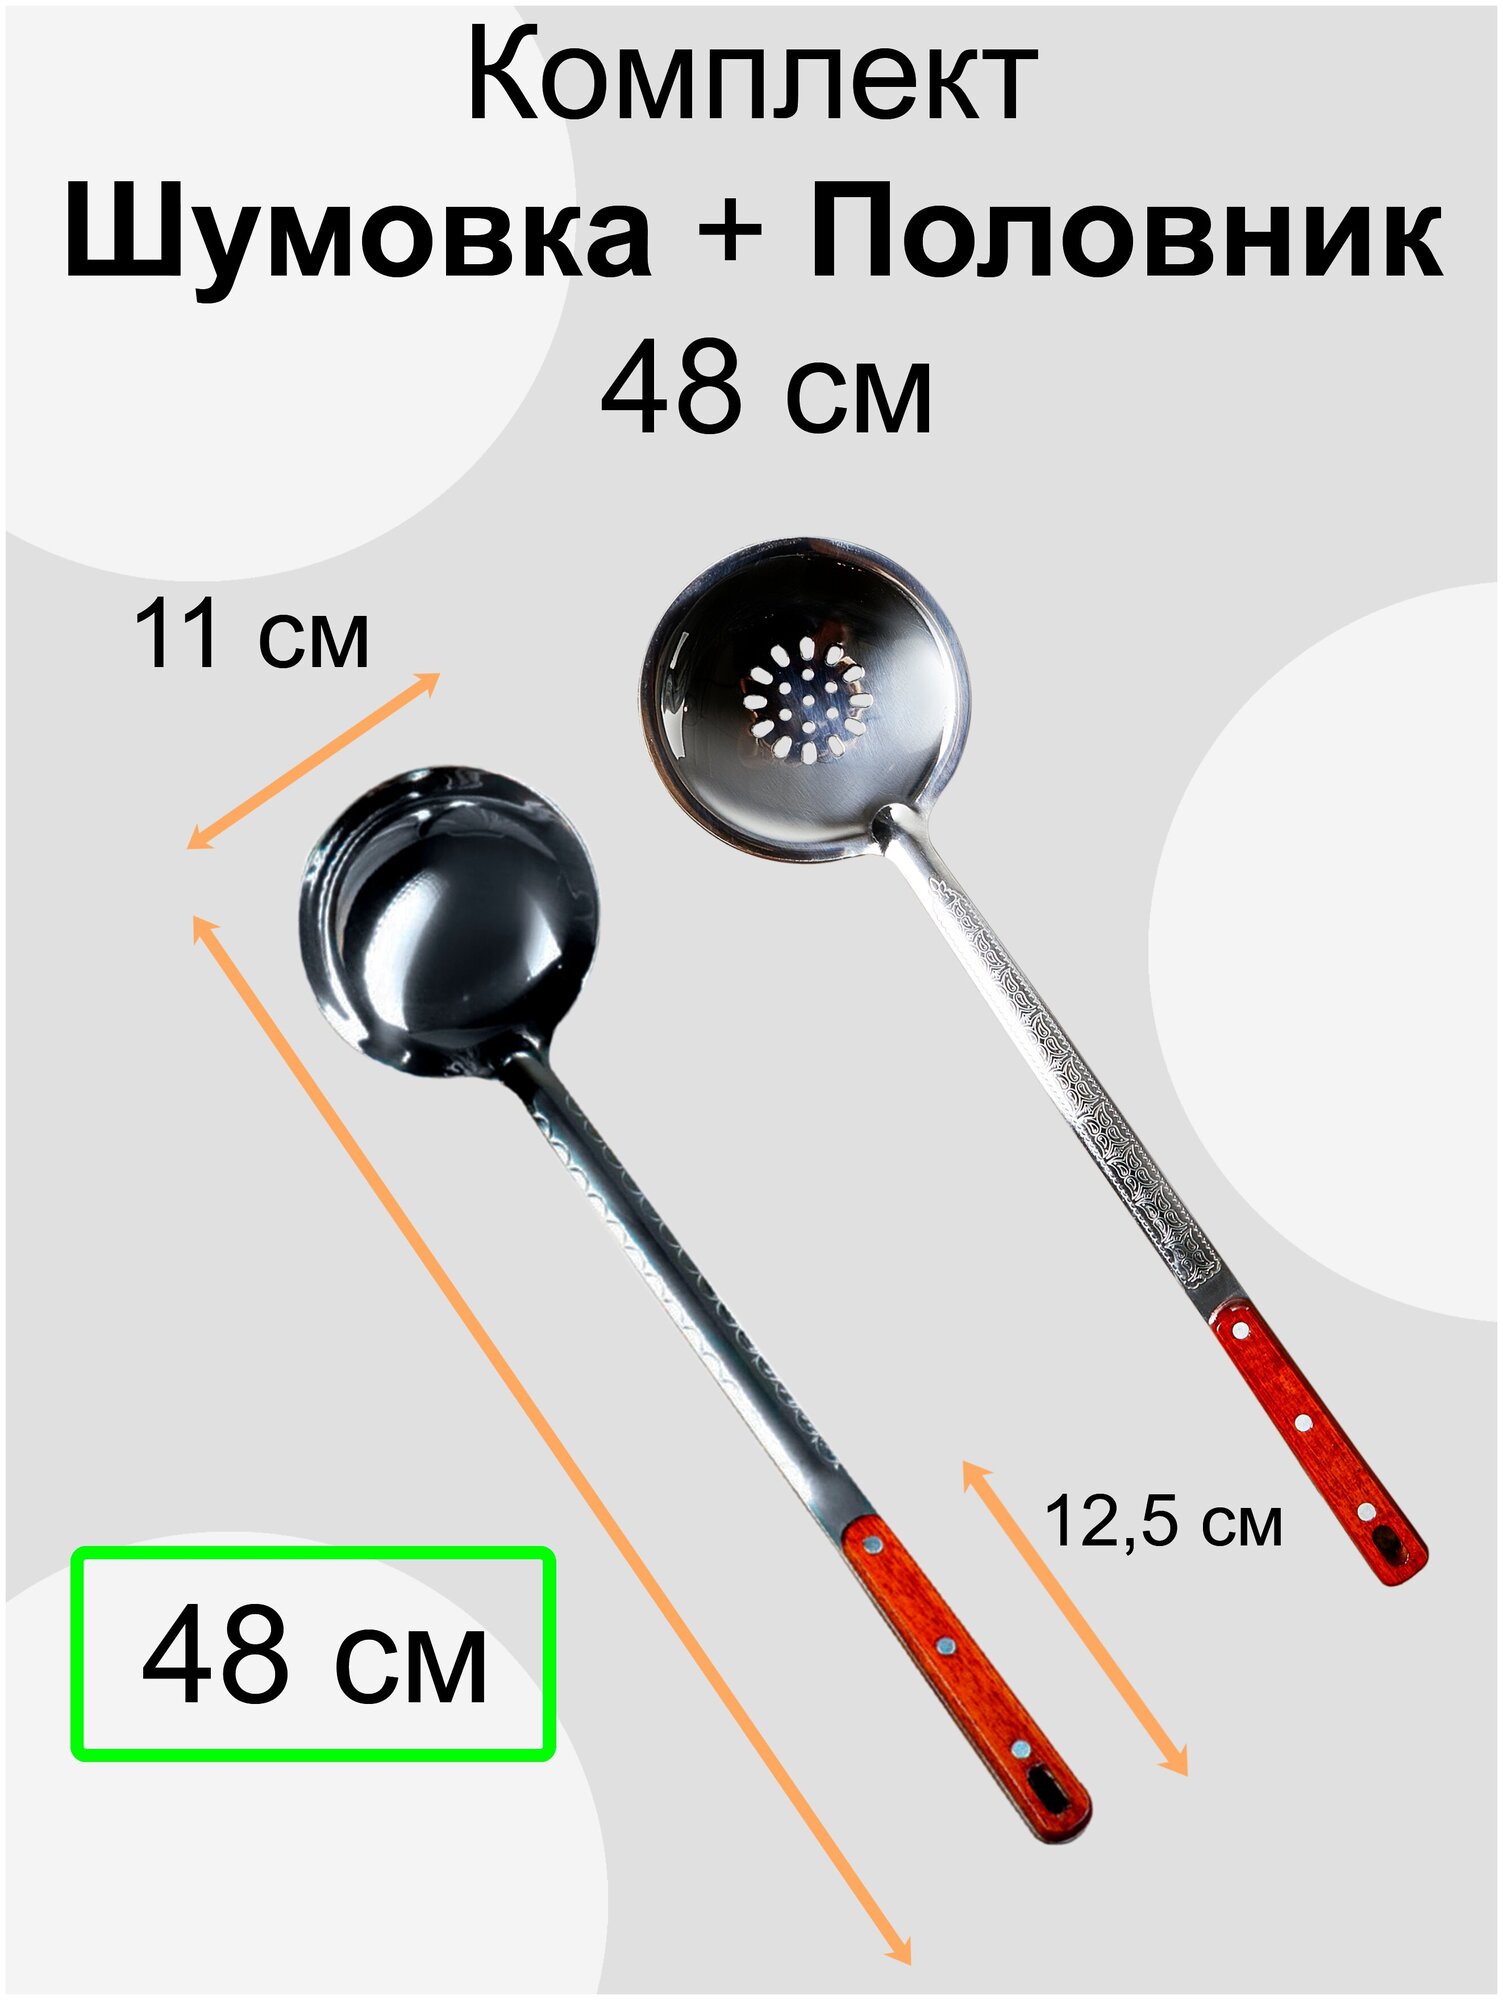 Комплект Шумовка и Половник / длинна 48 см — купить в интернет-магазине по низкой цене на Яндекс Маркете